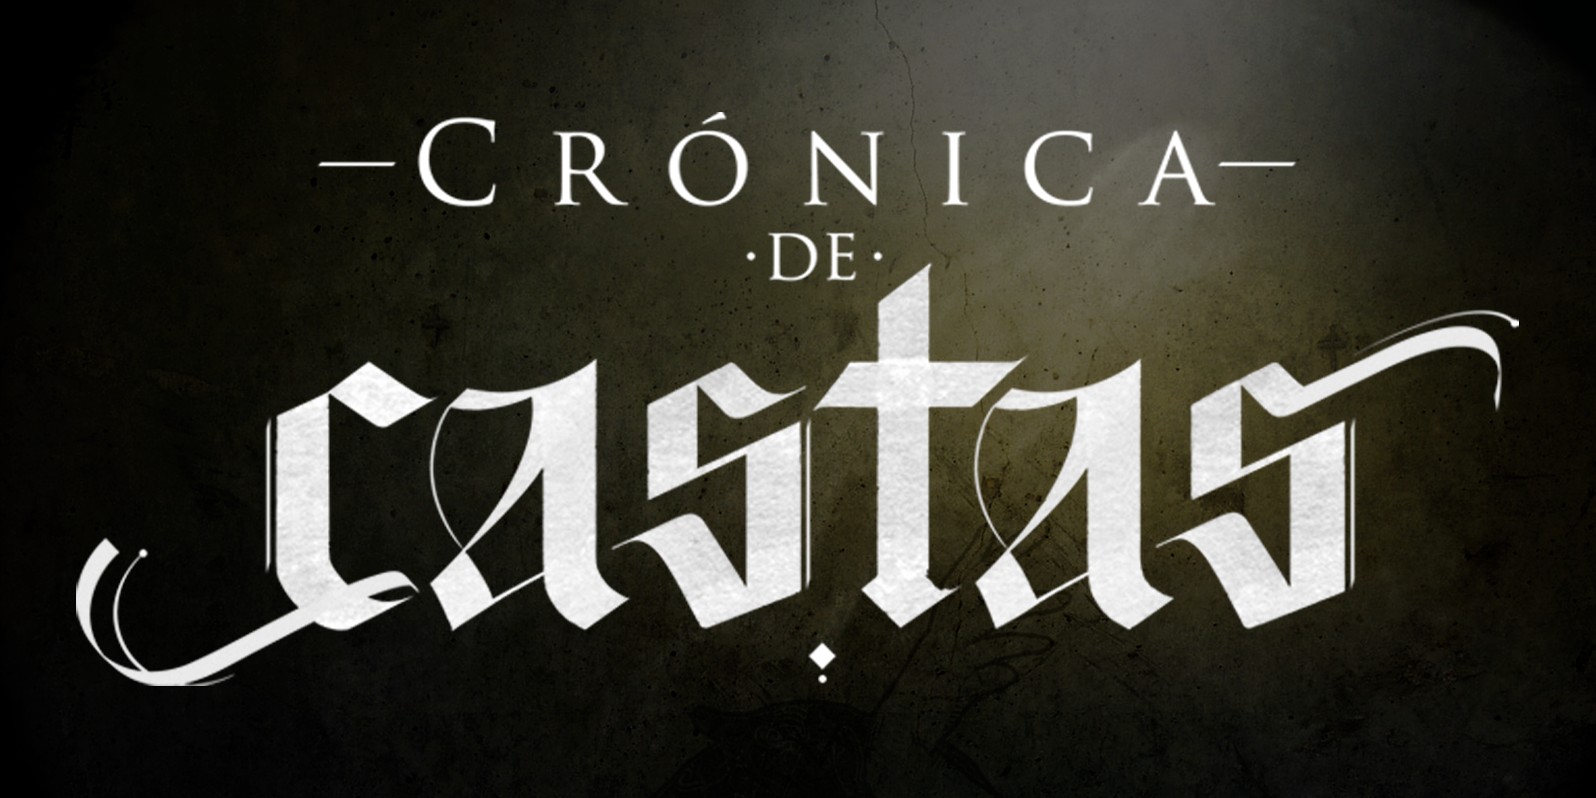 Crónica de Castas